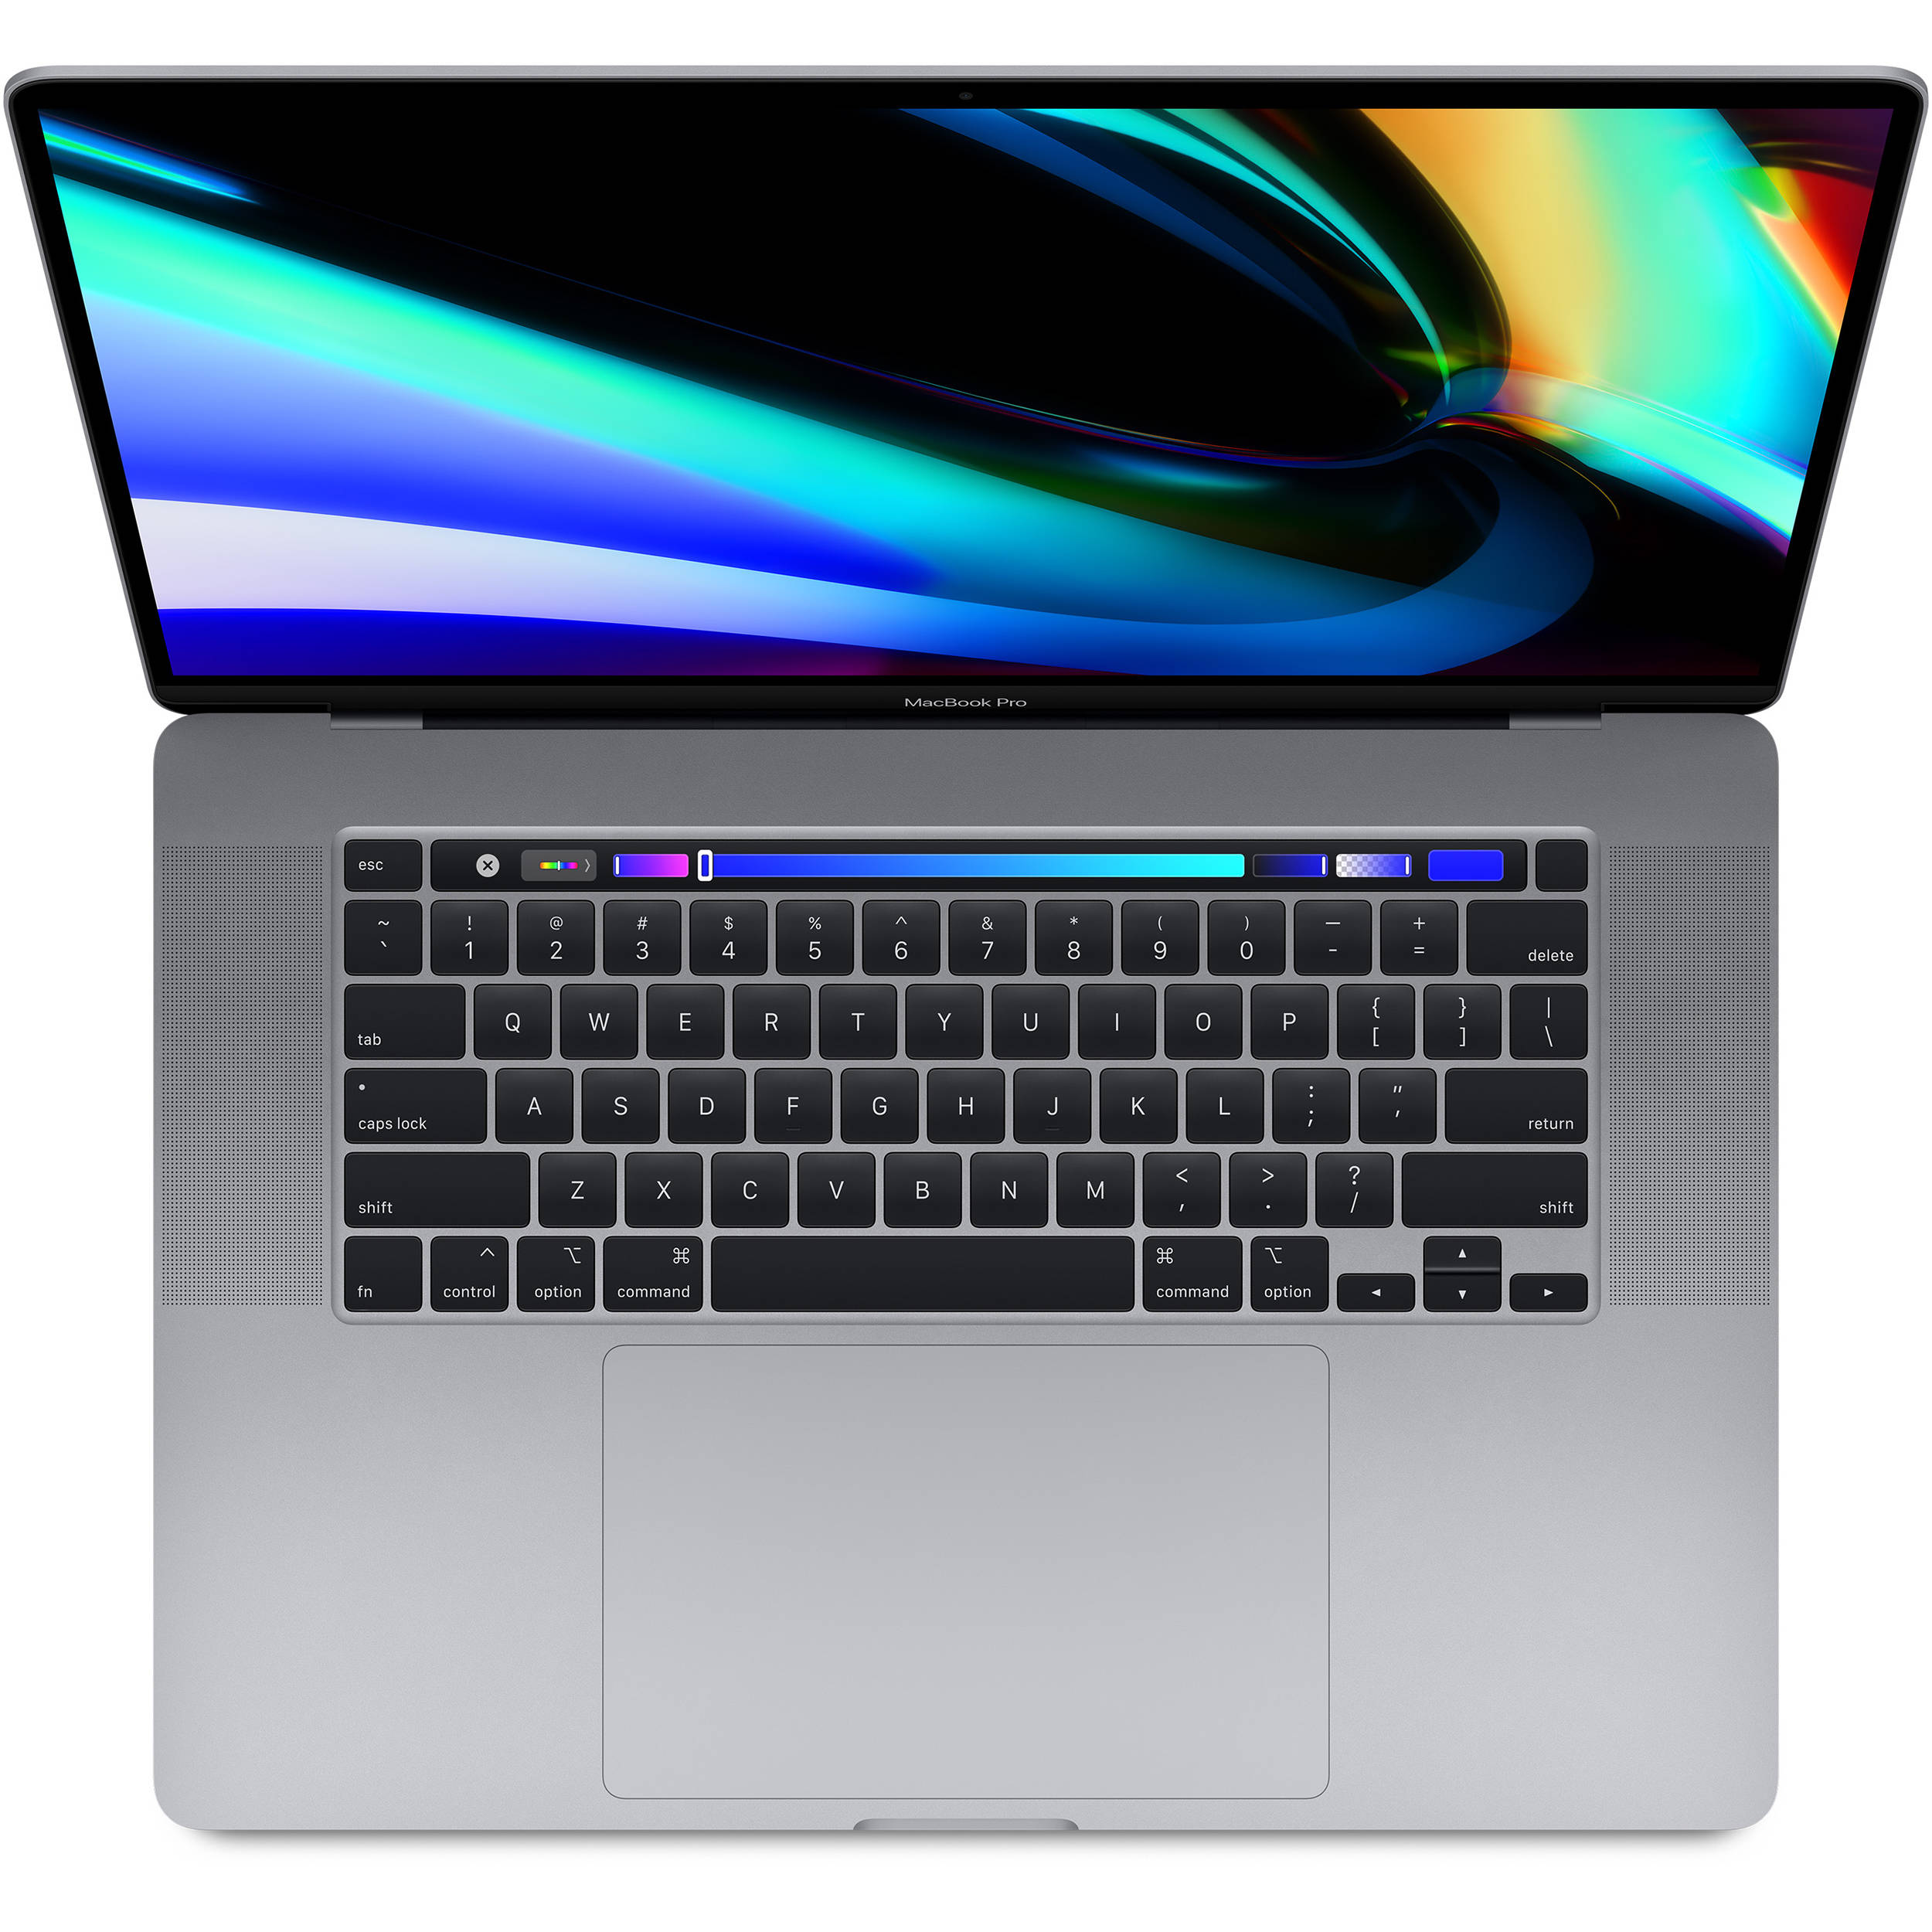 فروش نقدی و اقساطی لپ تاپ 16 اینچی اپل مدل MacBook Pro MVVK2 2019 همراه با تاچ بار